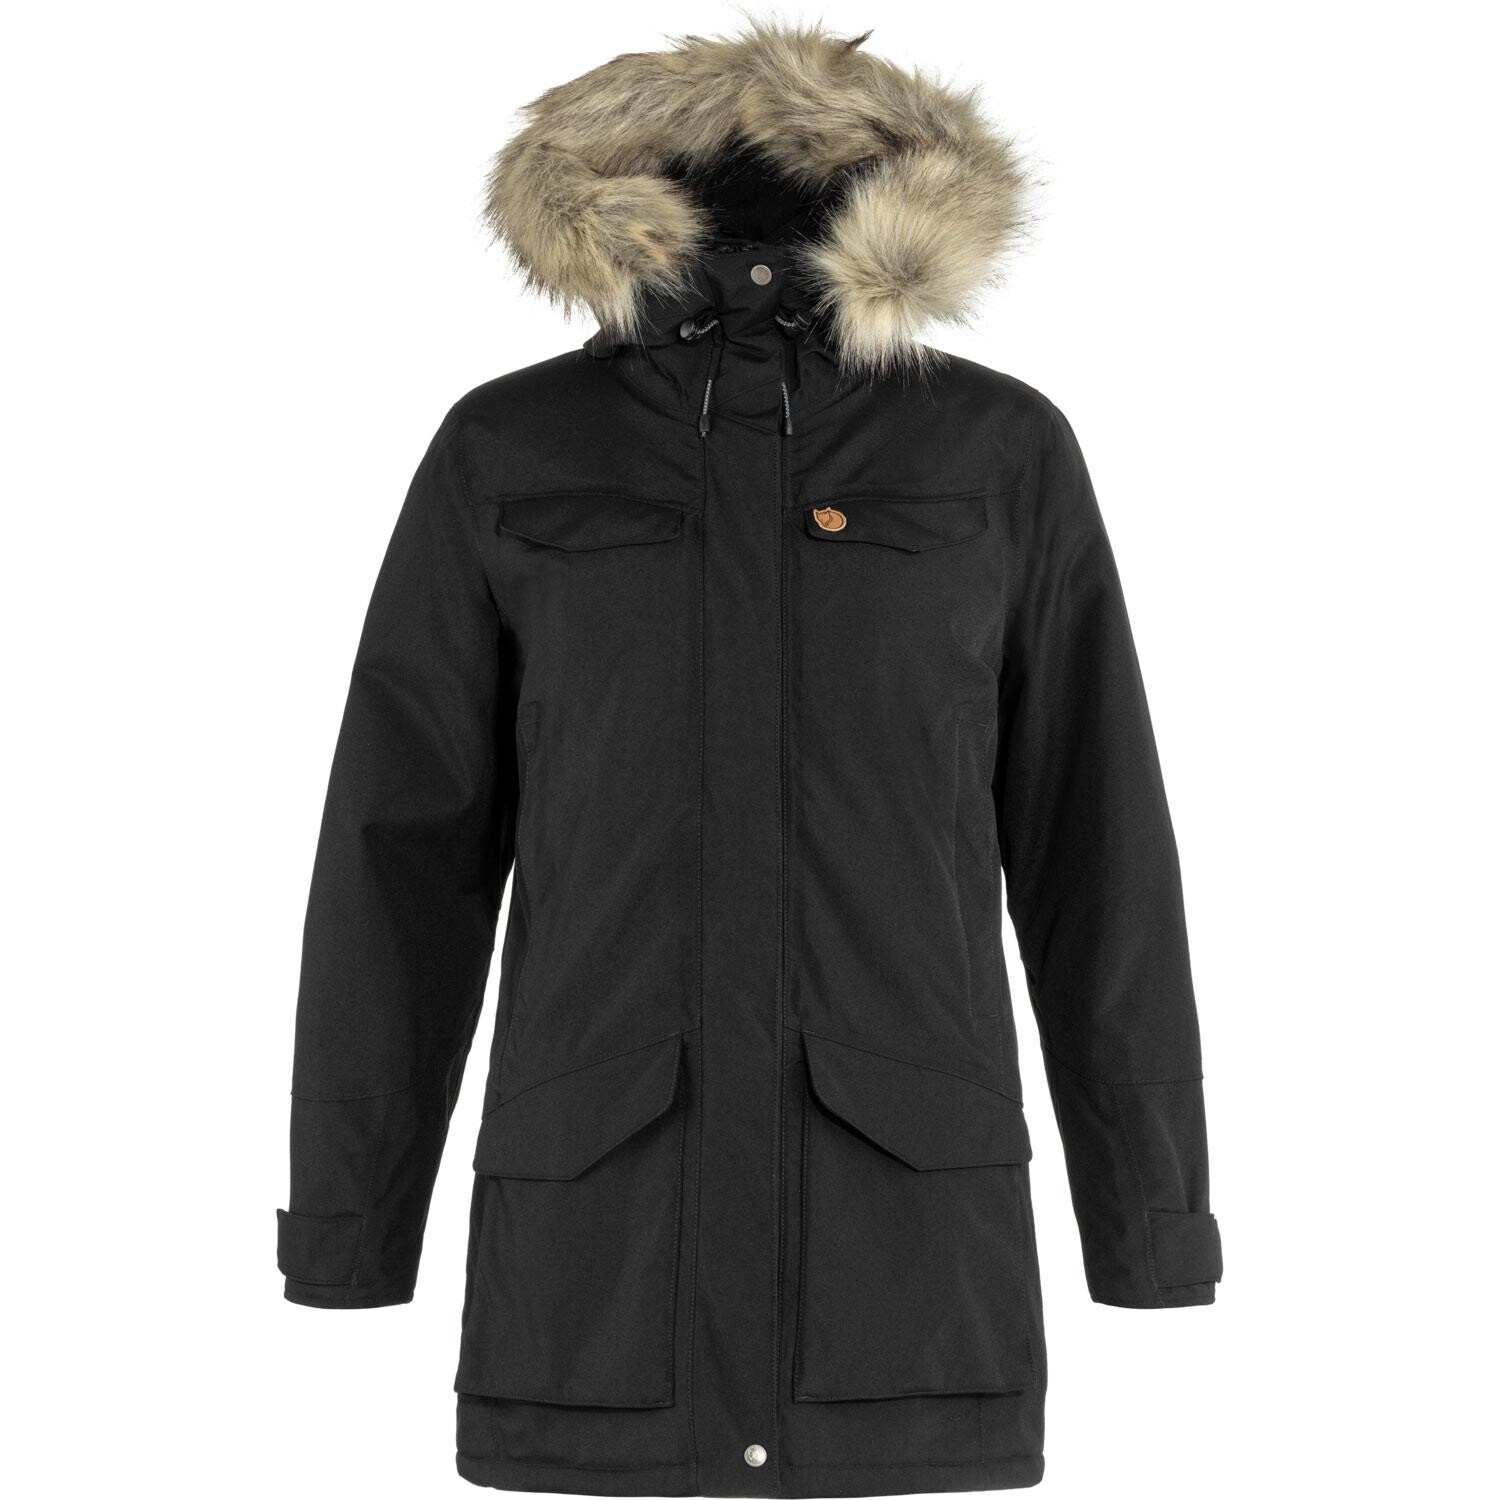 Køb varme jakker til kvinder - varmen med jakker fra Friluftsland